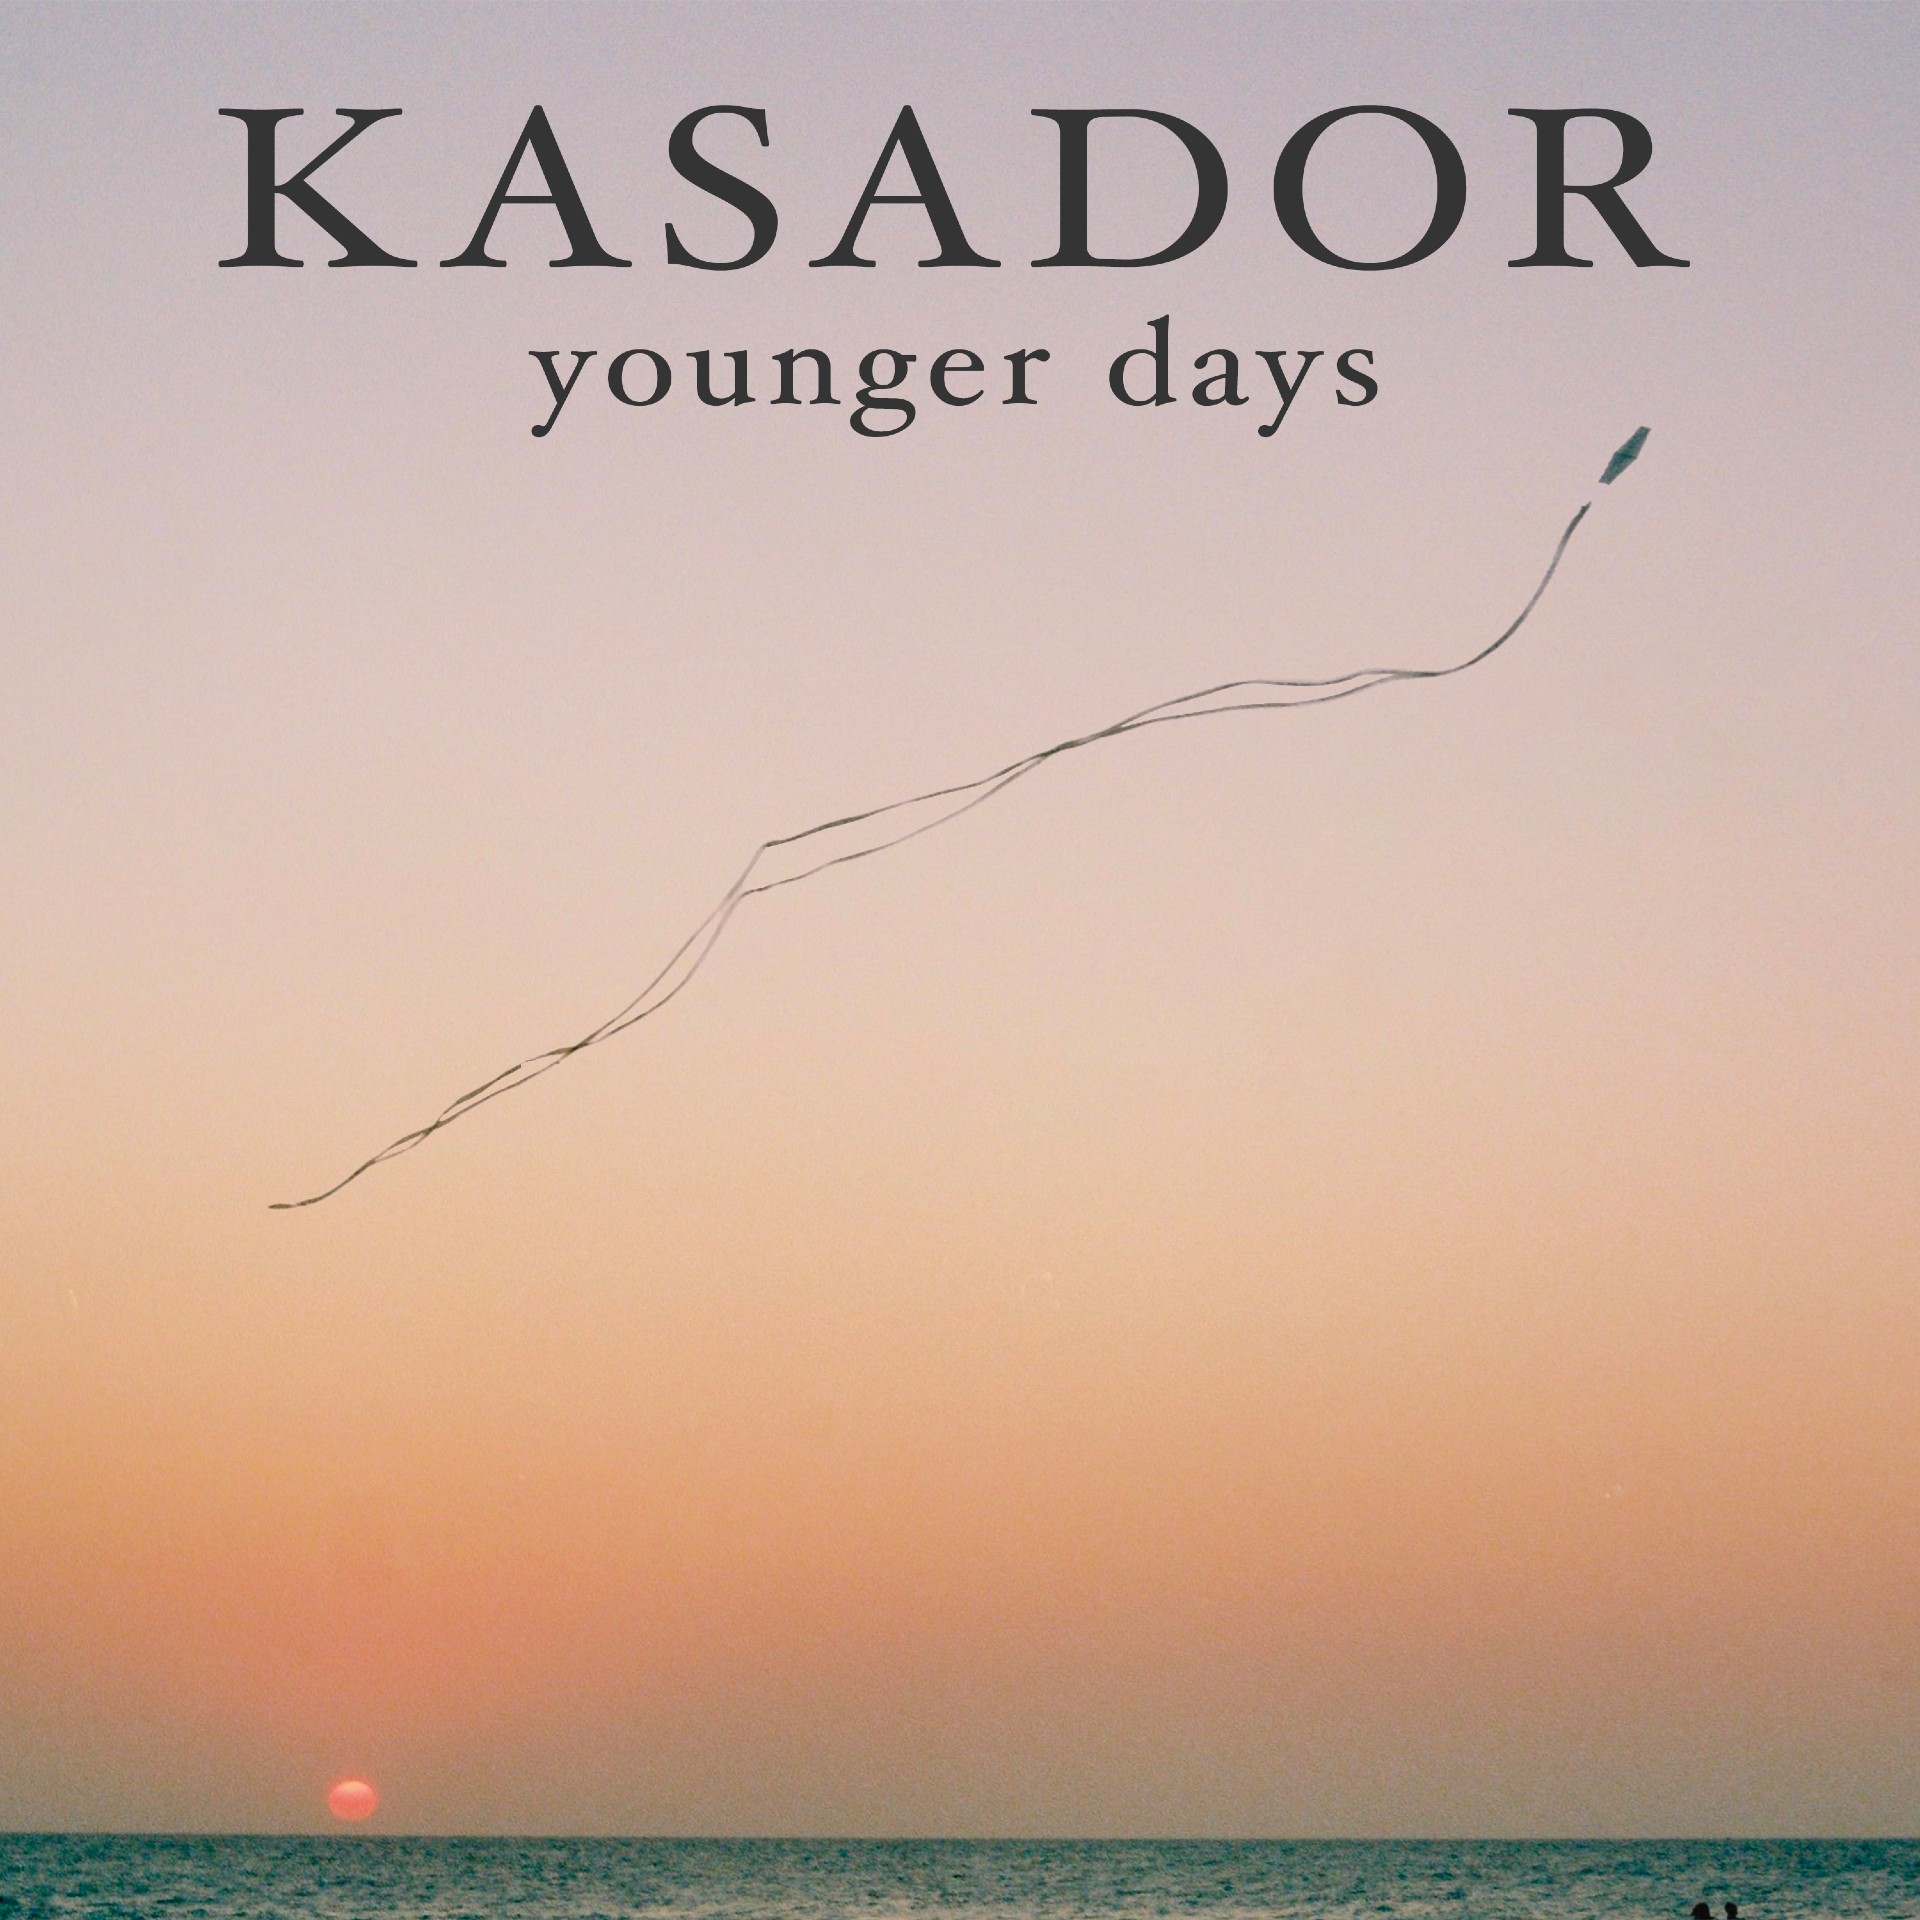 Kasador “Younger Days” single artwork